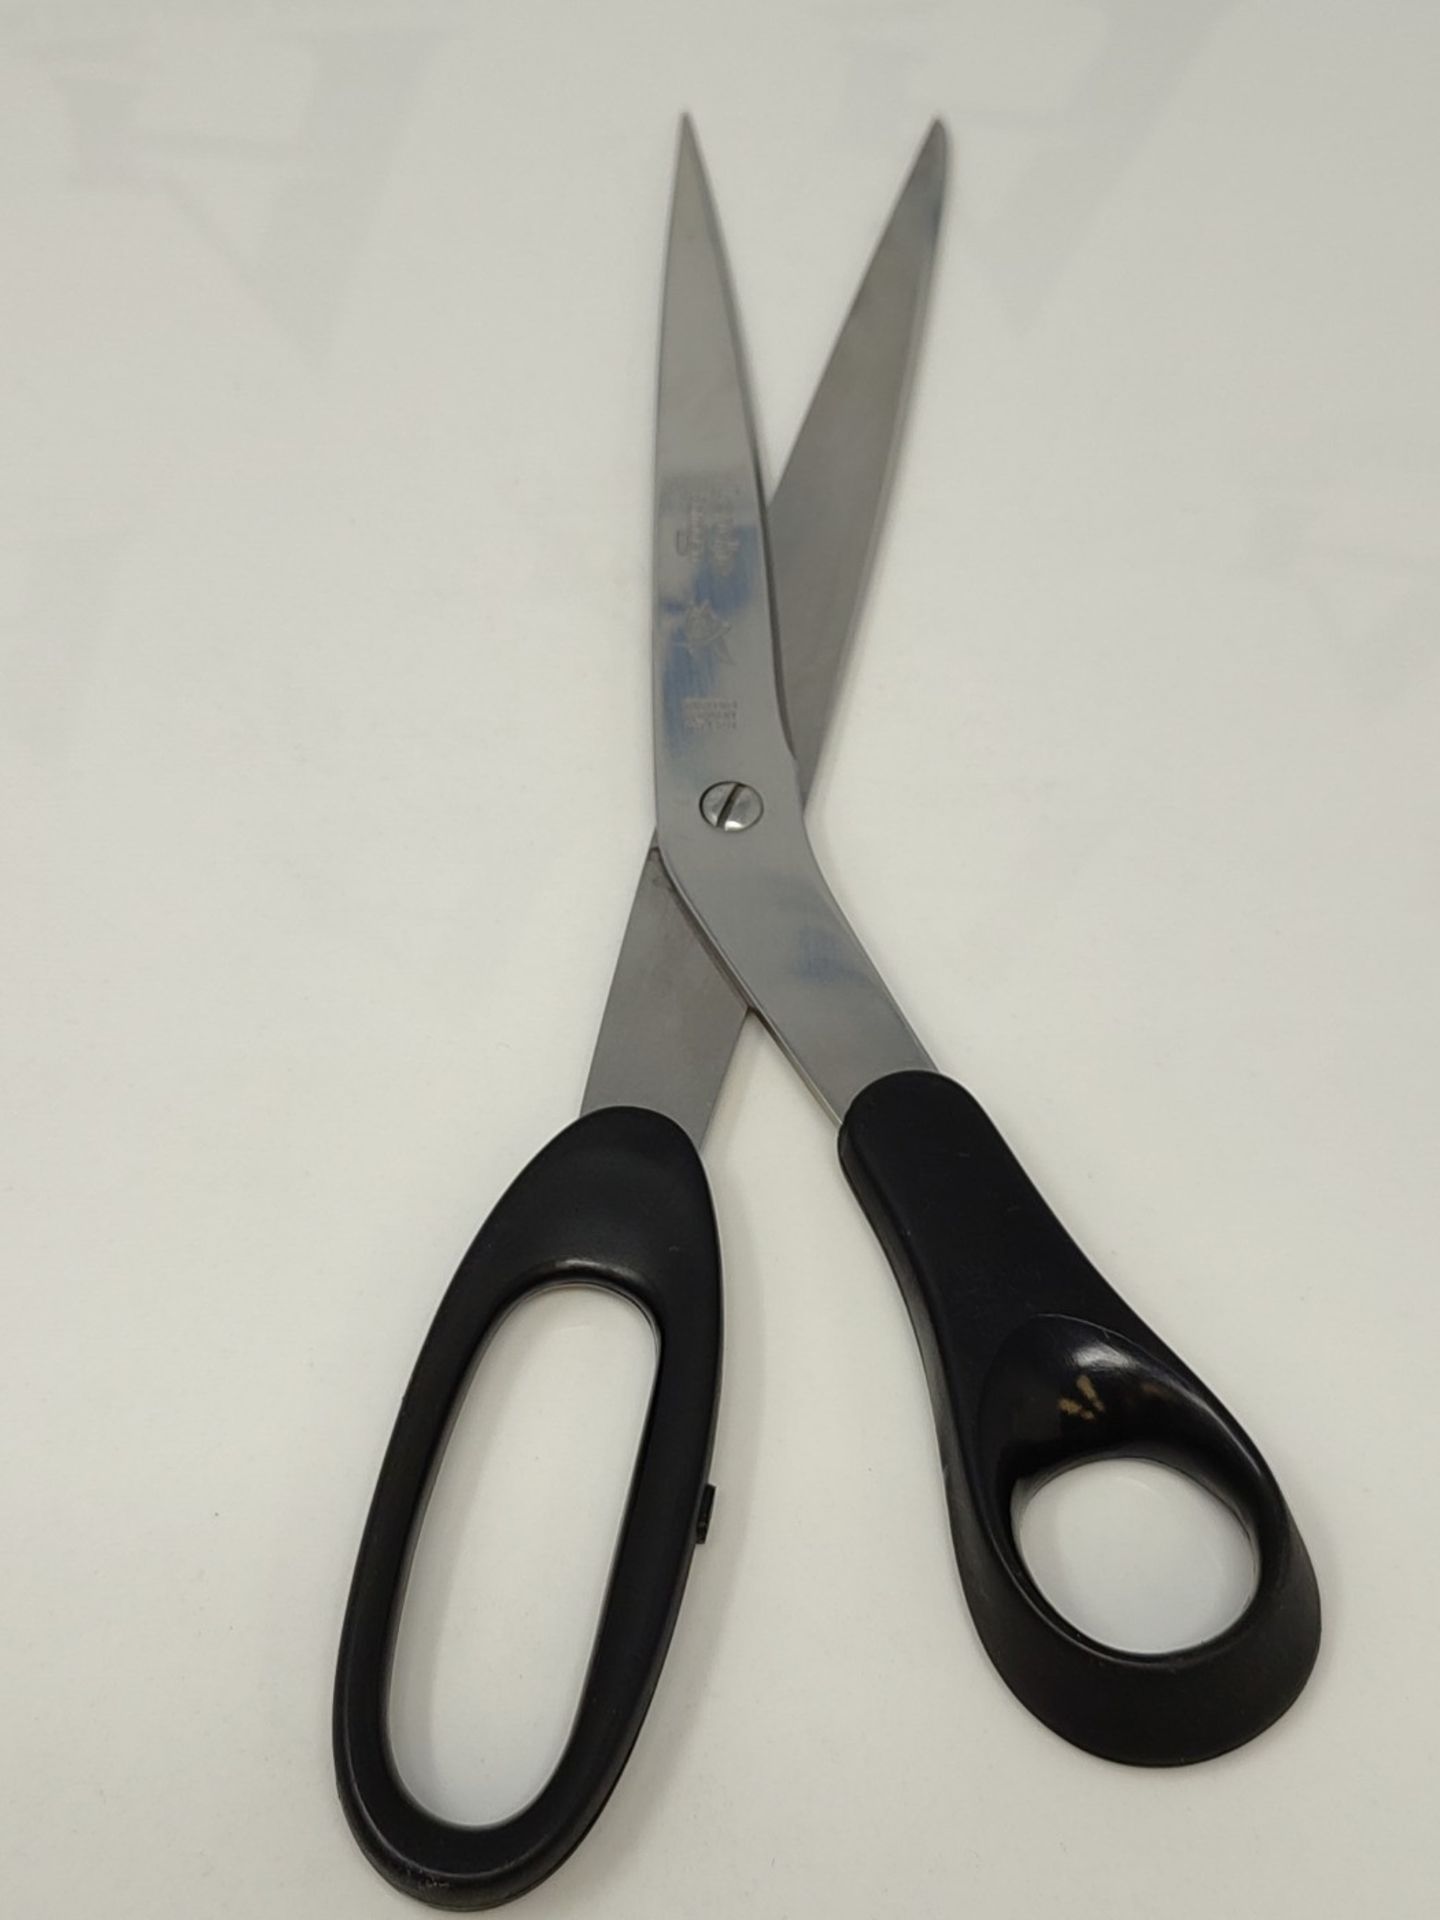 Professional Dahle Scissors - 25 cm, black - Image 4 of 4